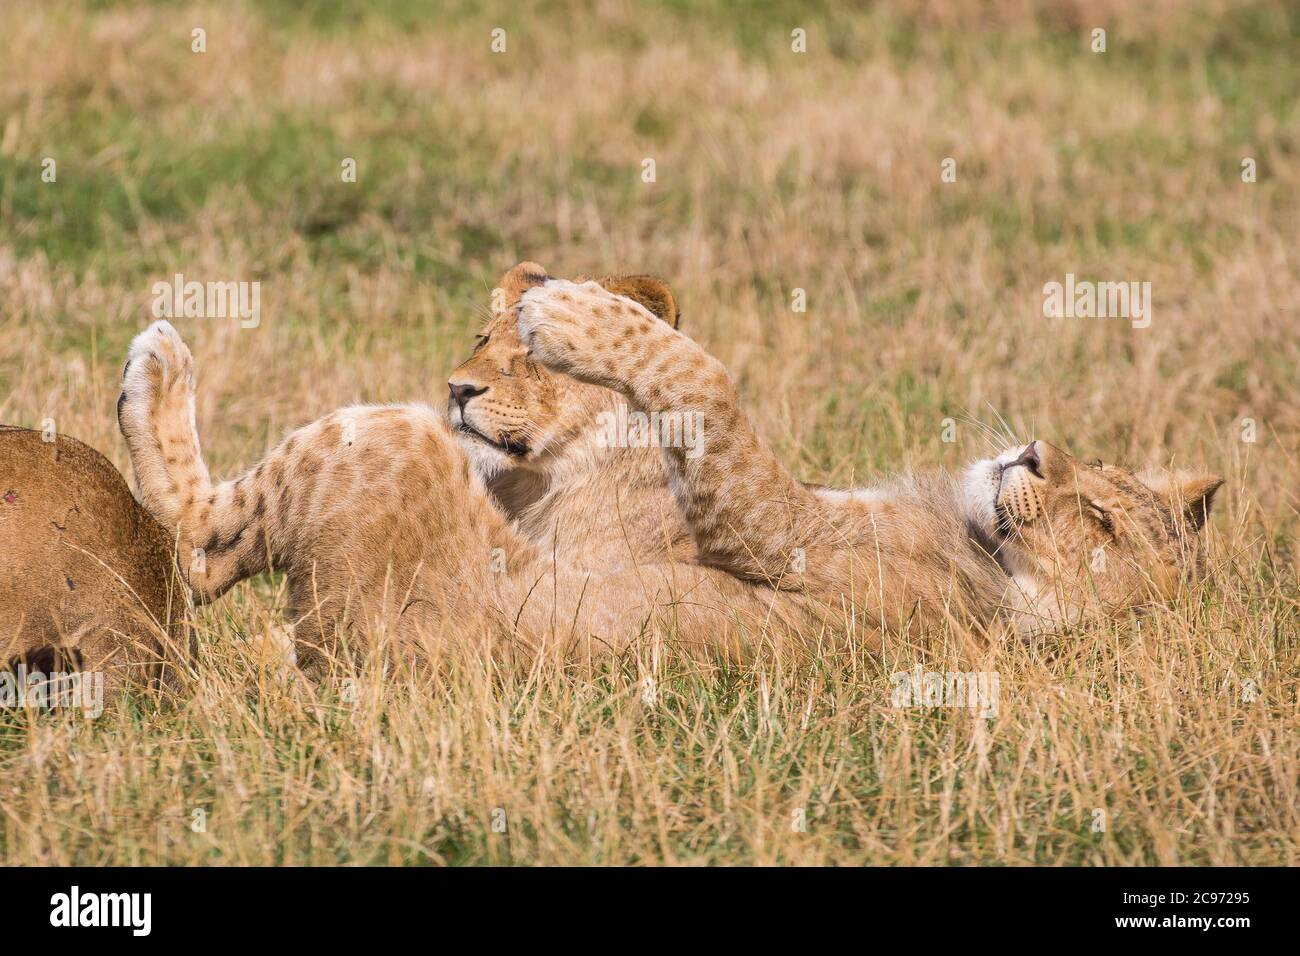 Gros plan de deux adorables petits lions africains (Panthera leo), allongés dans une longue pelouse, reposant, l'un sur le dos s'étendant en profitant de la chaleur du soleil de l'été. Banque D'Images